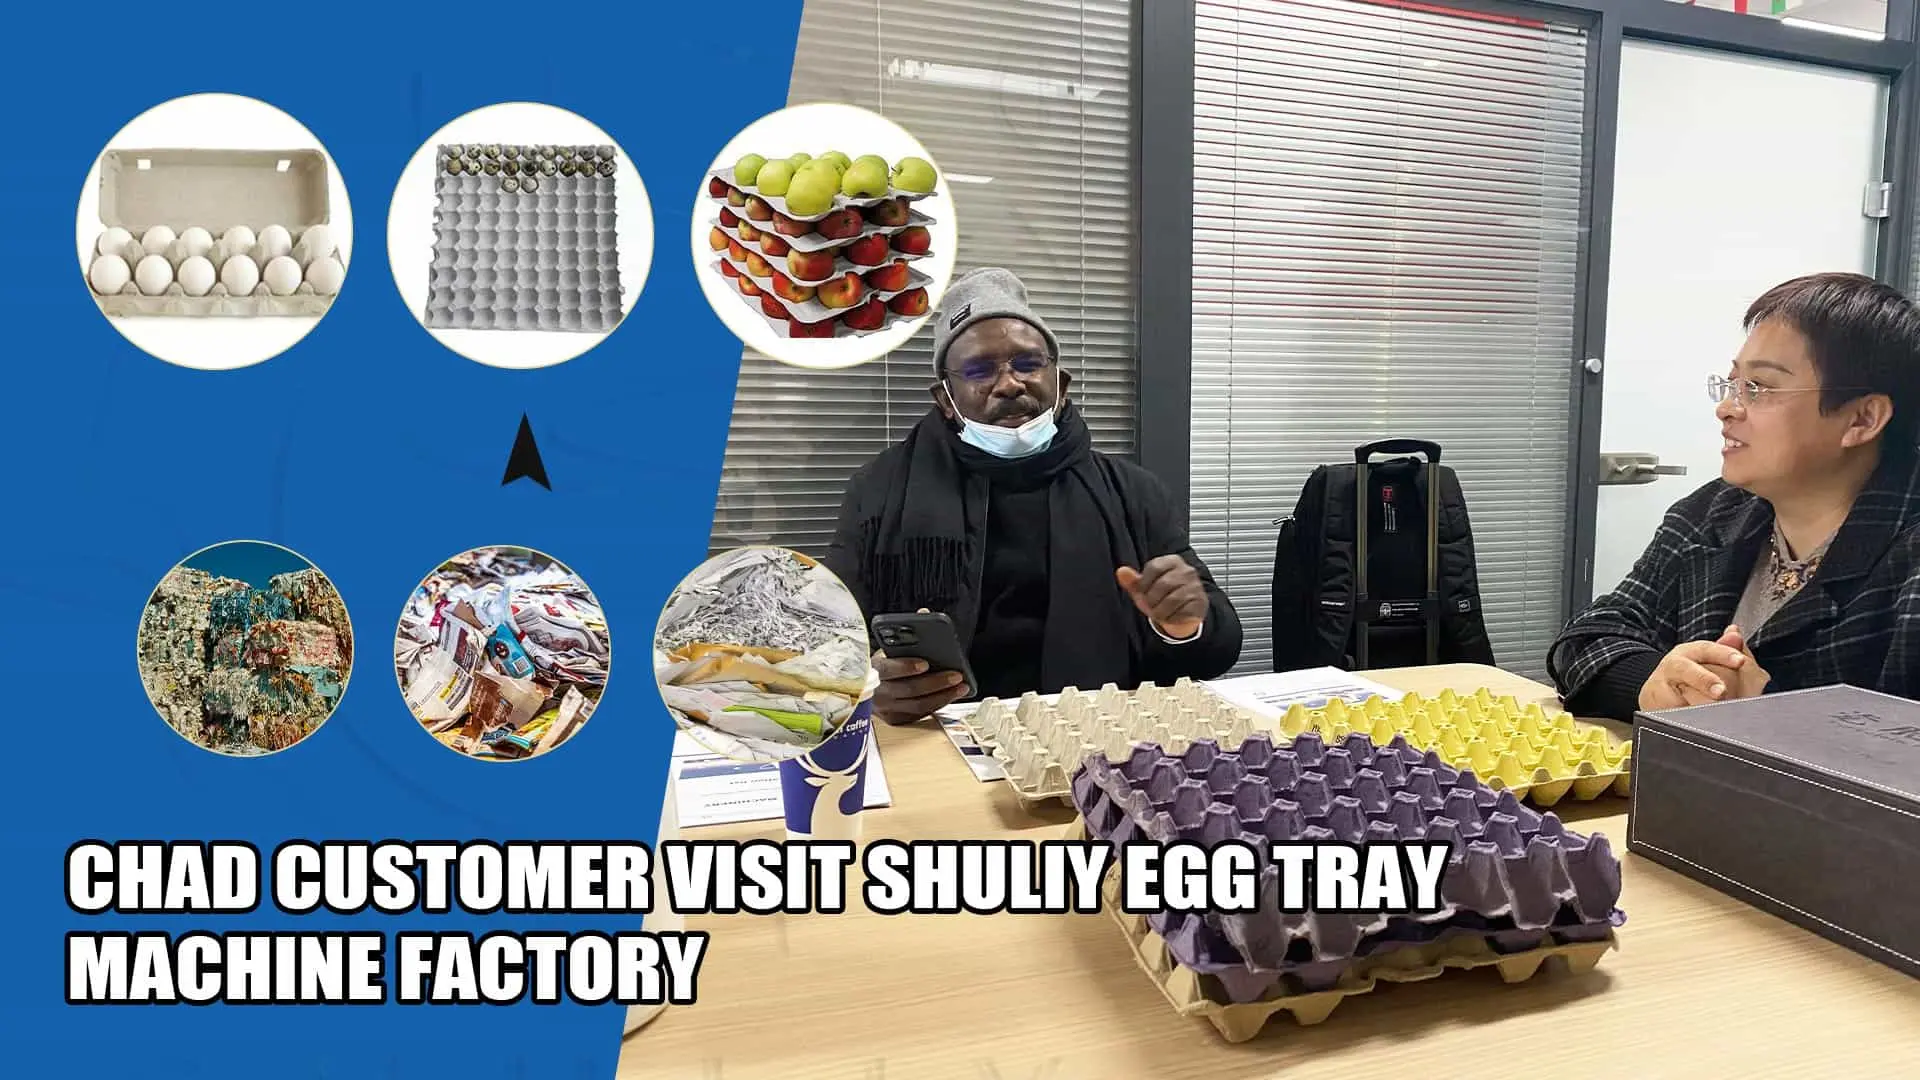 Подразделение по производству лотков для яиц продано в Чад